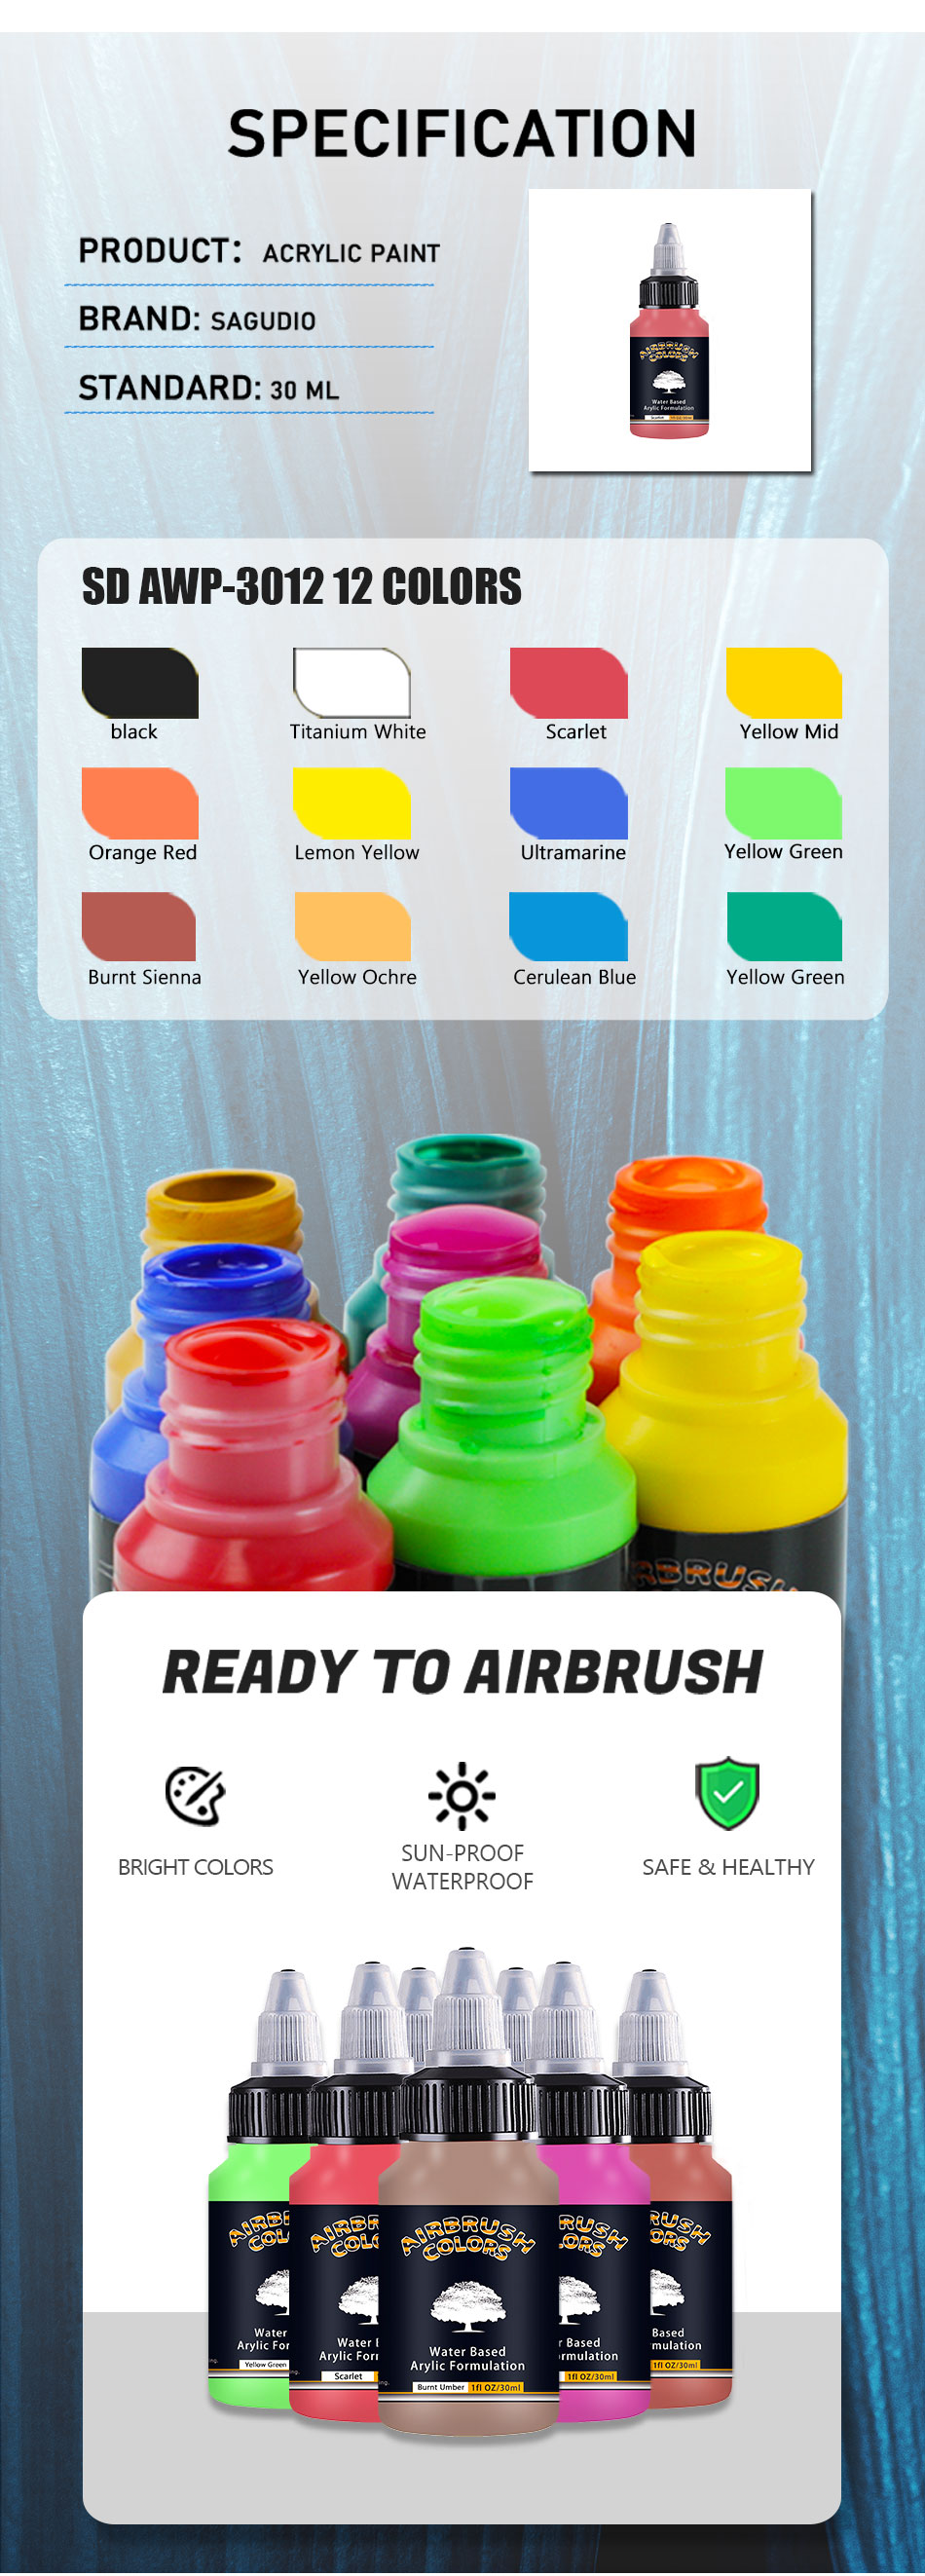 SAGUDIO Airbrush Paint 12 Colors 30 ml/1 oz Basic Colors Ready to Spray, Acrylic